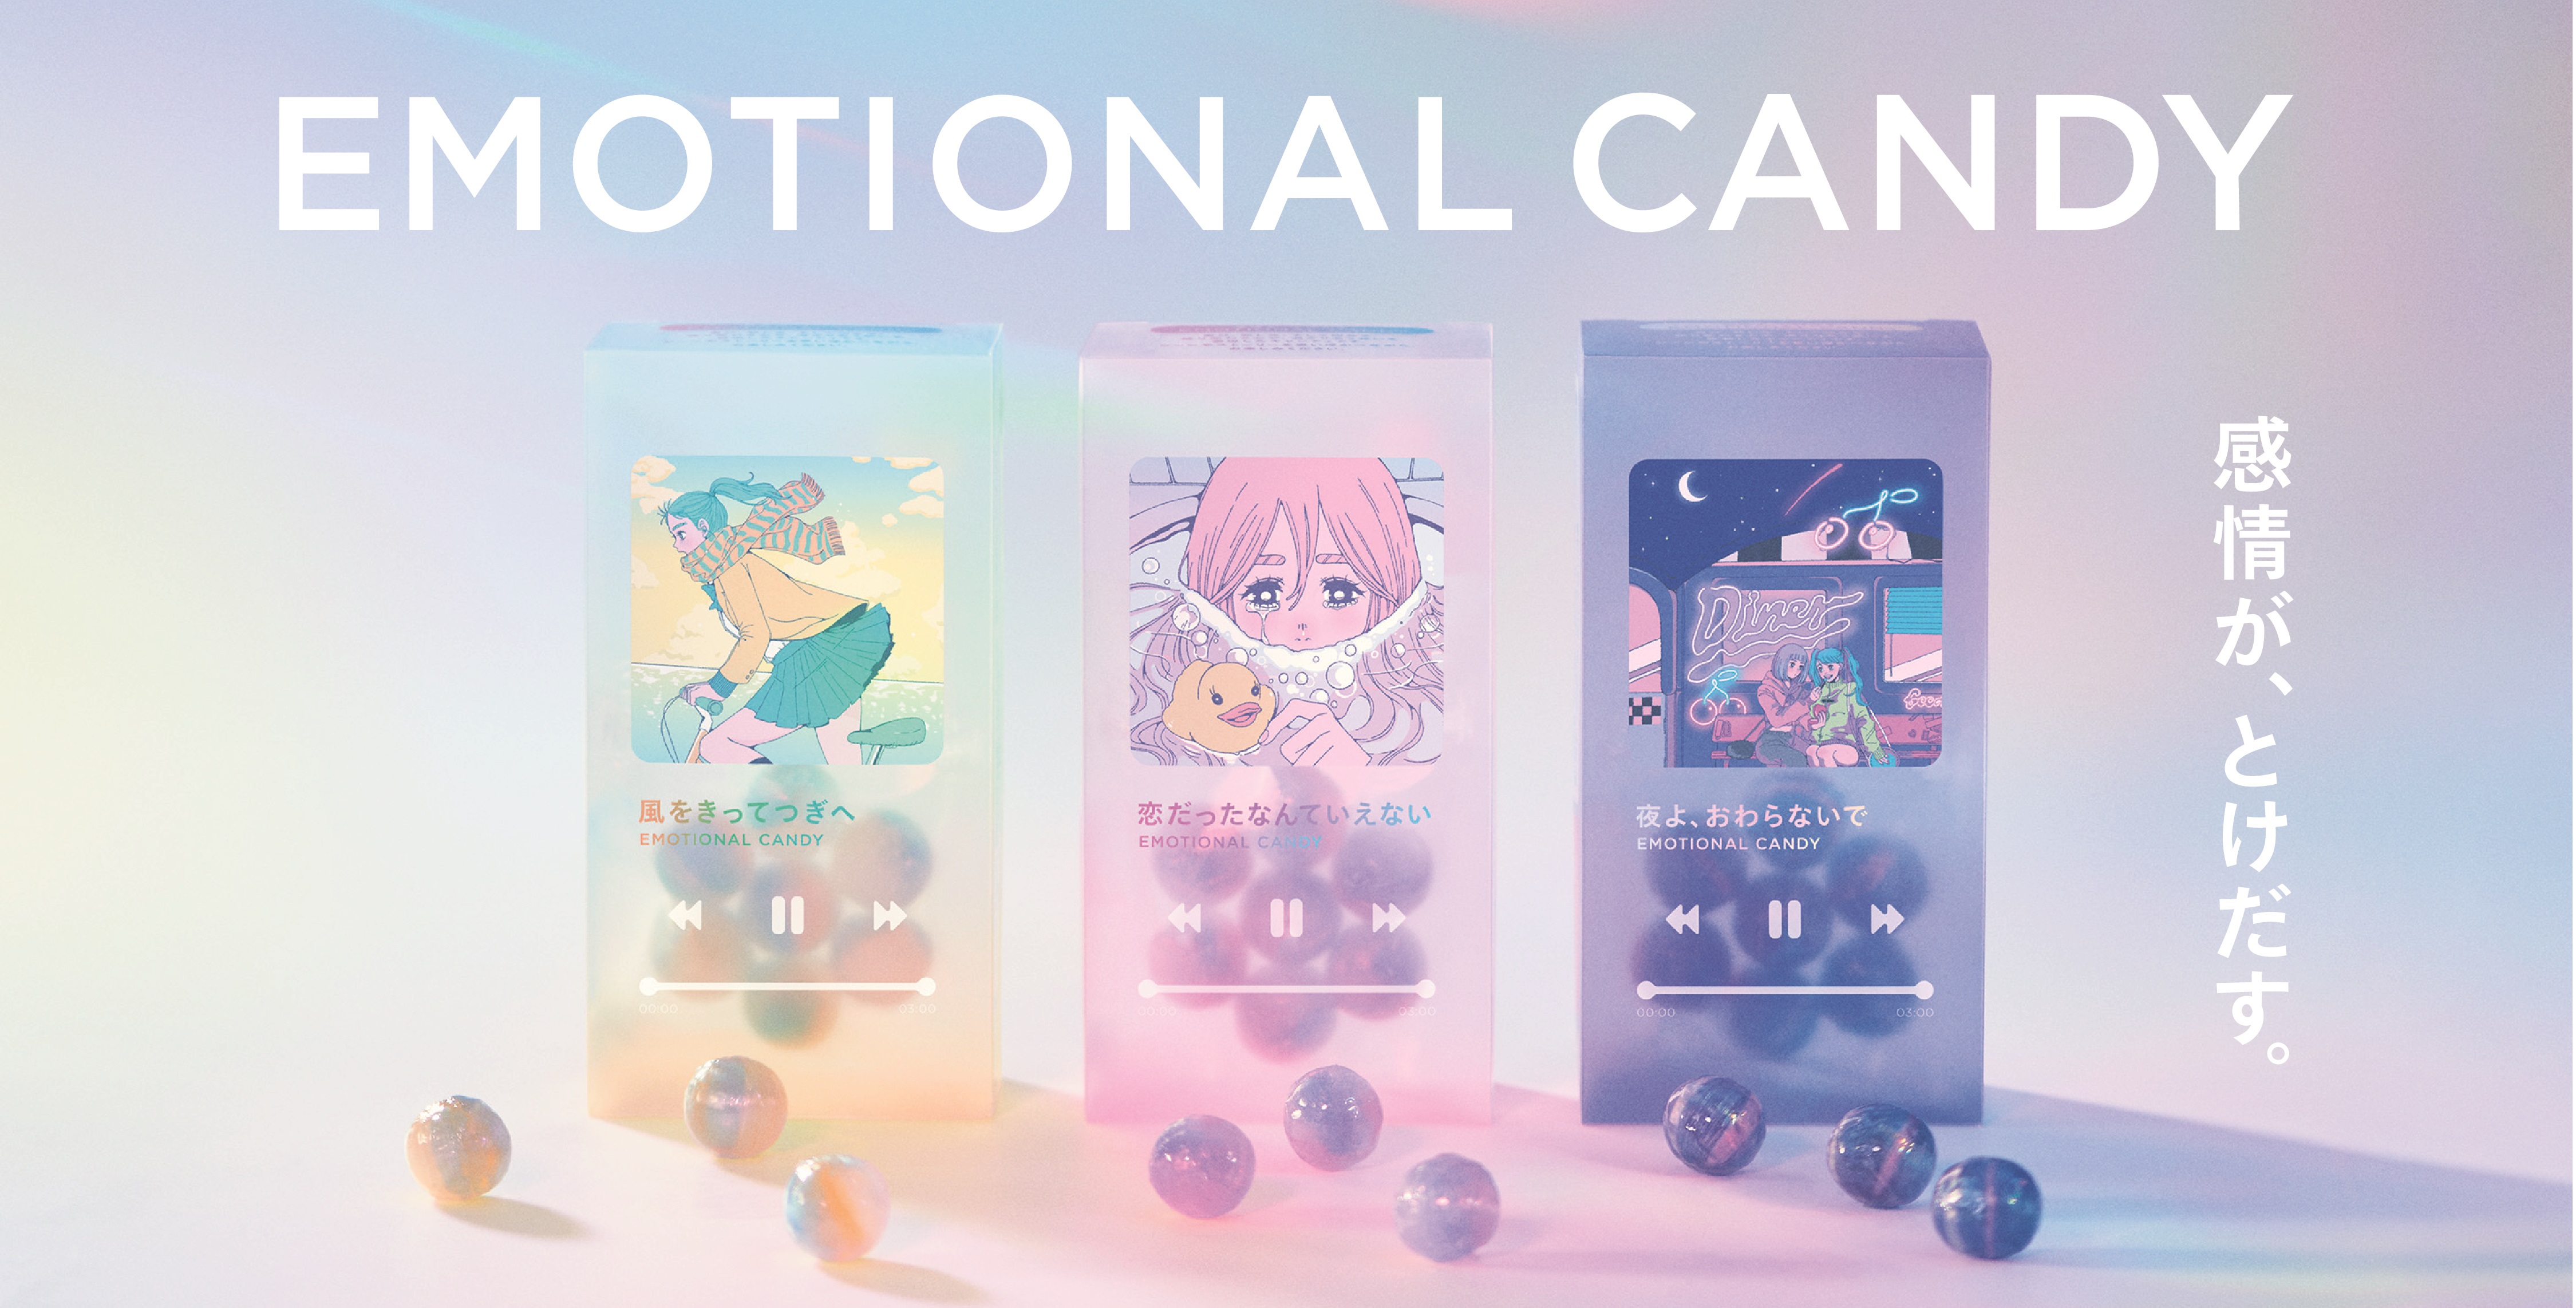 エモい がとけだす 新感覚キャンディが登場 Z世代をターゲットにした Plaza カンロ Emotional Candy プラザスタイルの プレスリリース